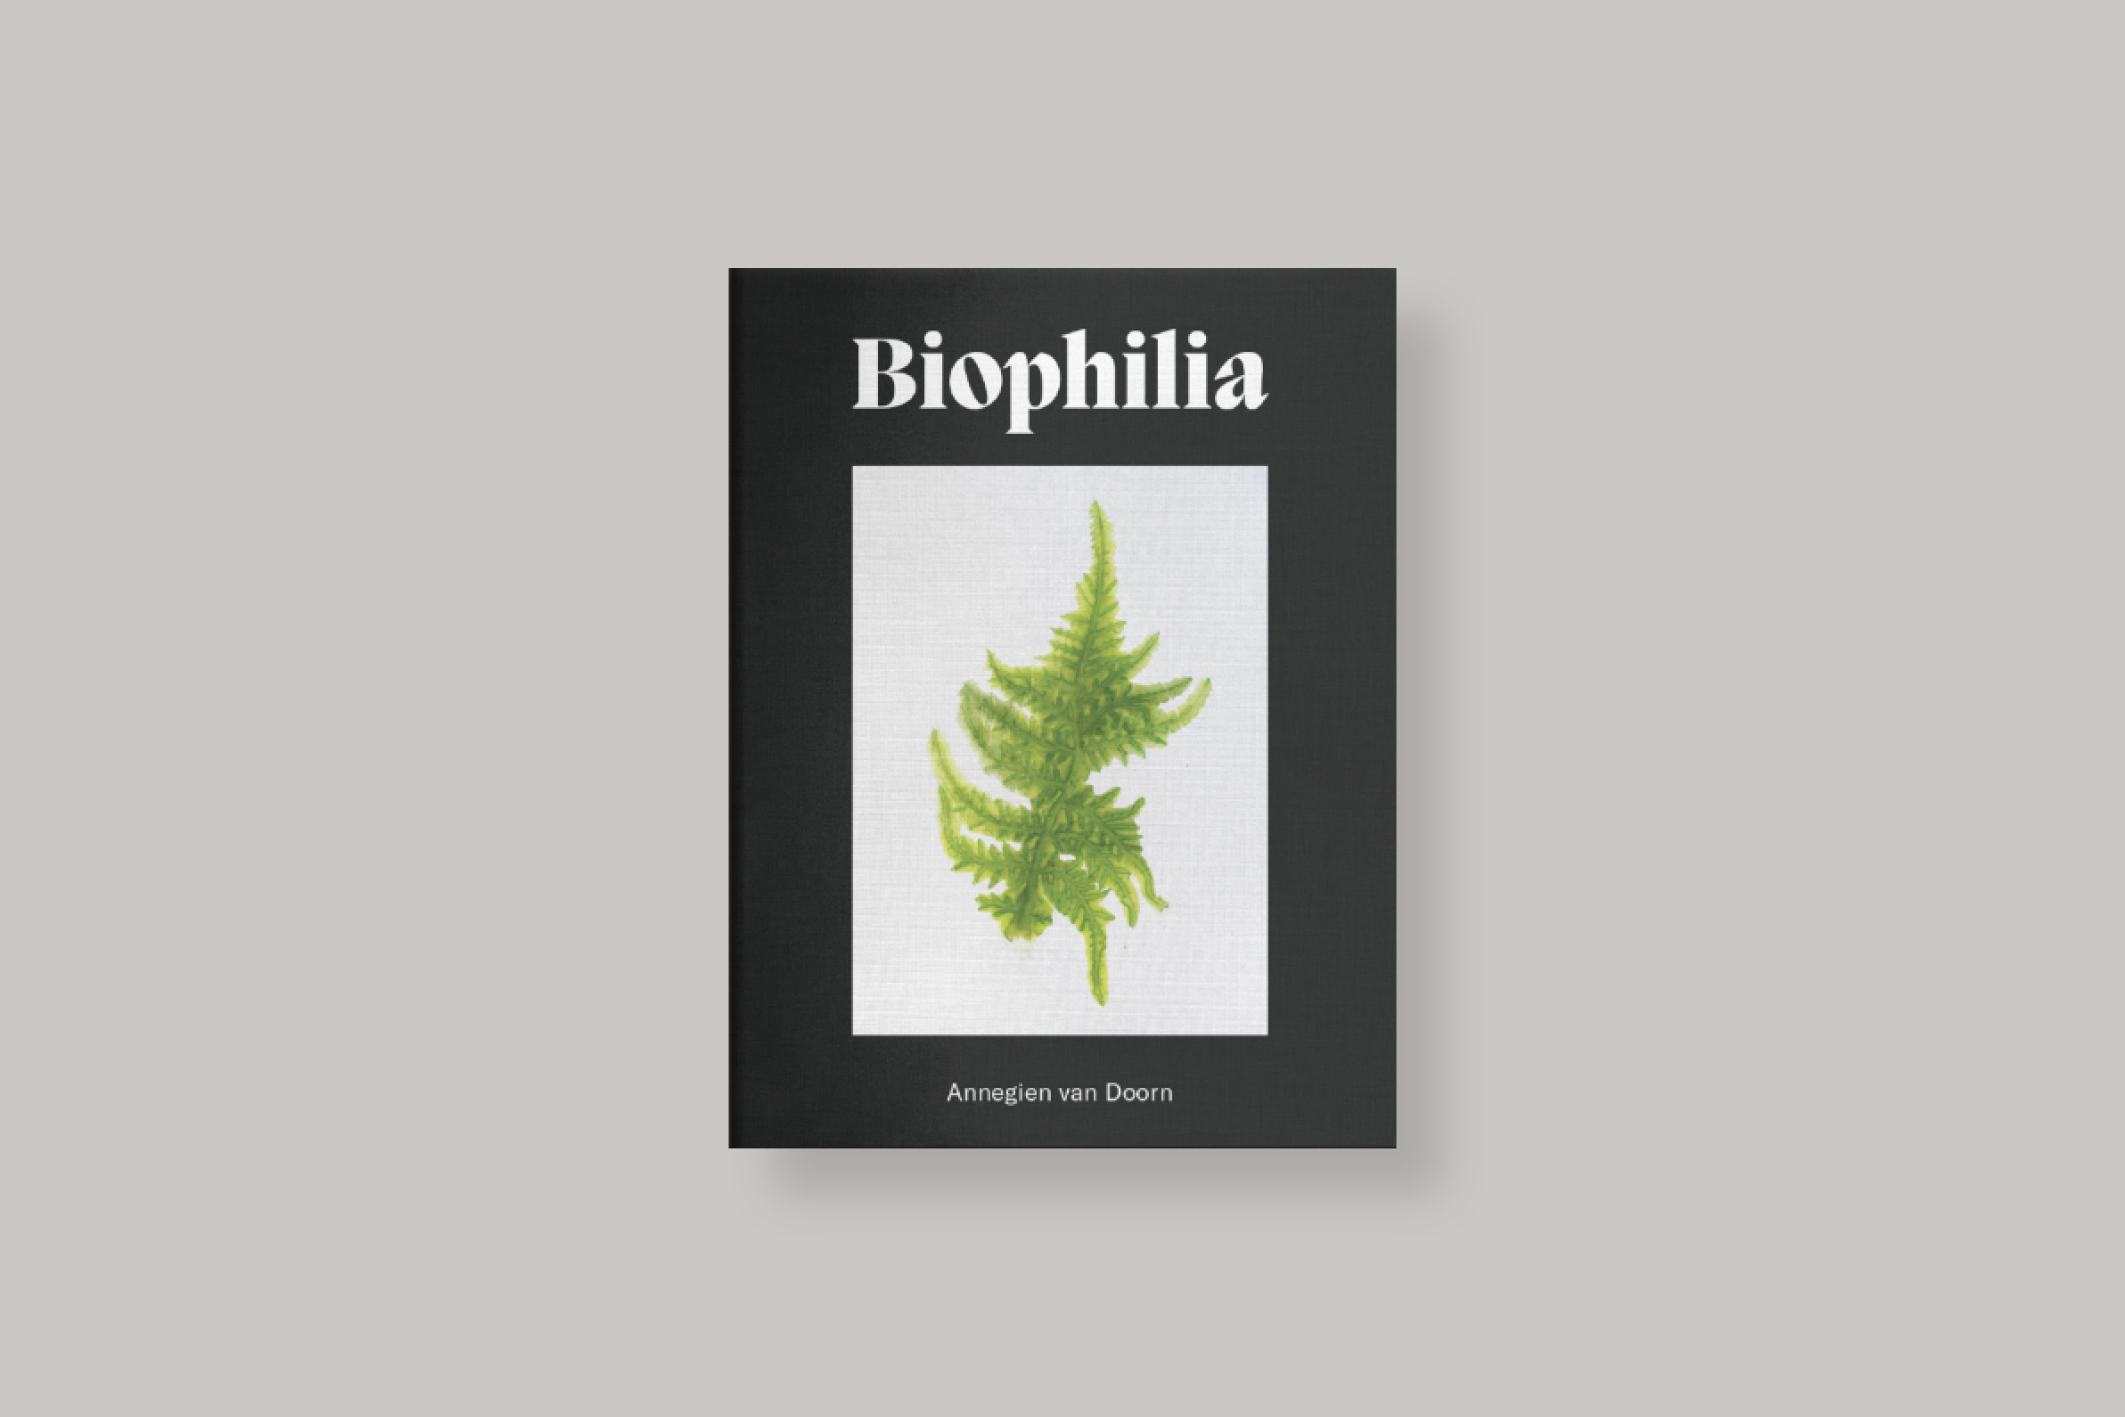 biophilia-annegien-van-doorn-cover